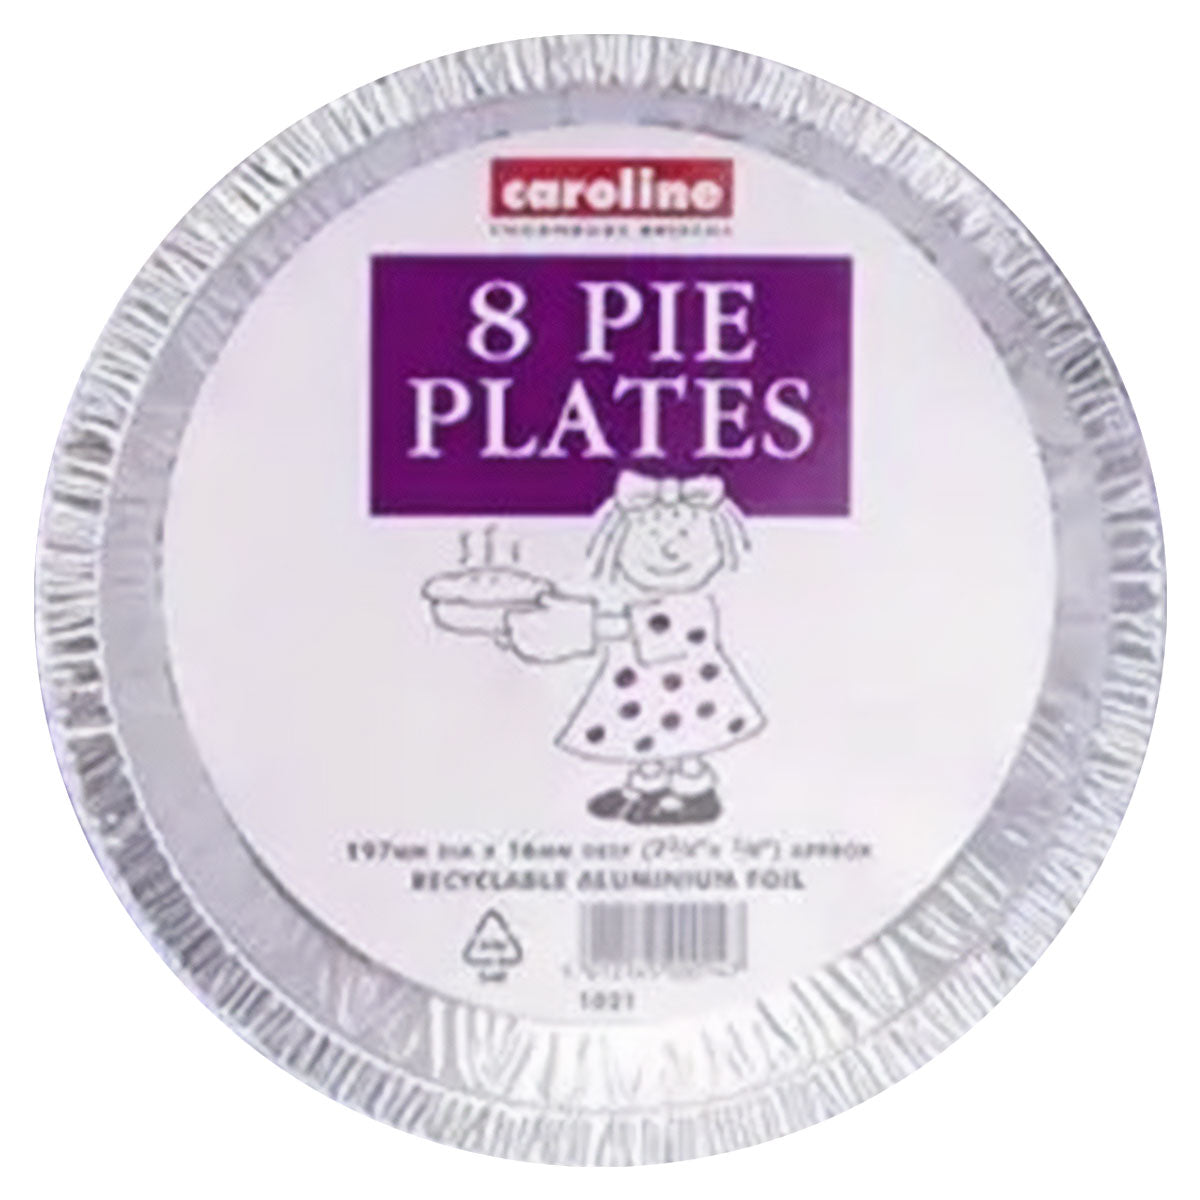 Caroline - Aluminium Pie Plates - 8 Pack - Continental Food Store